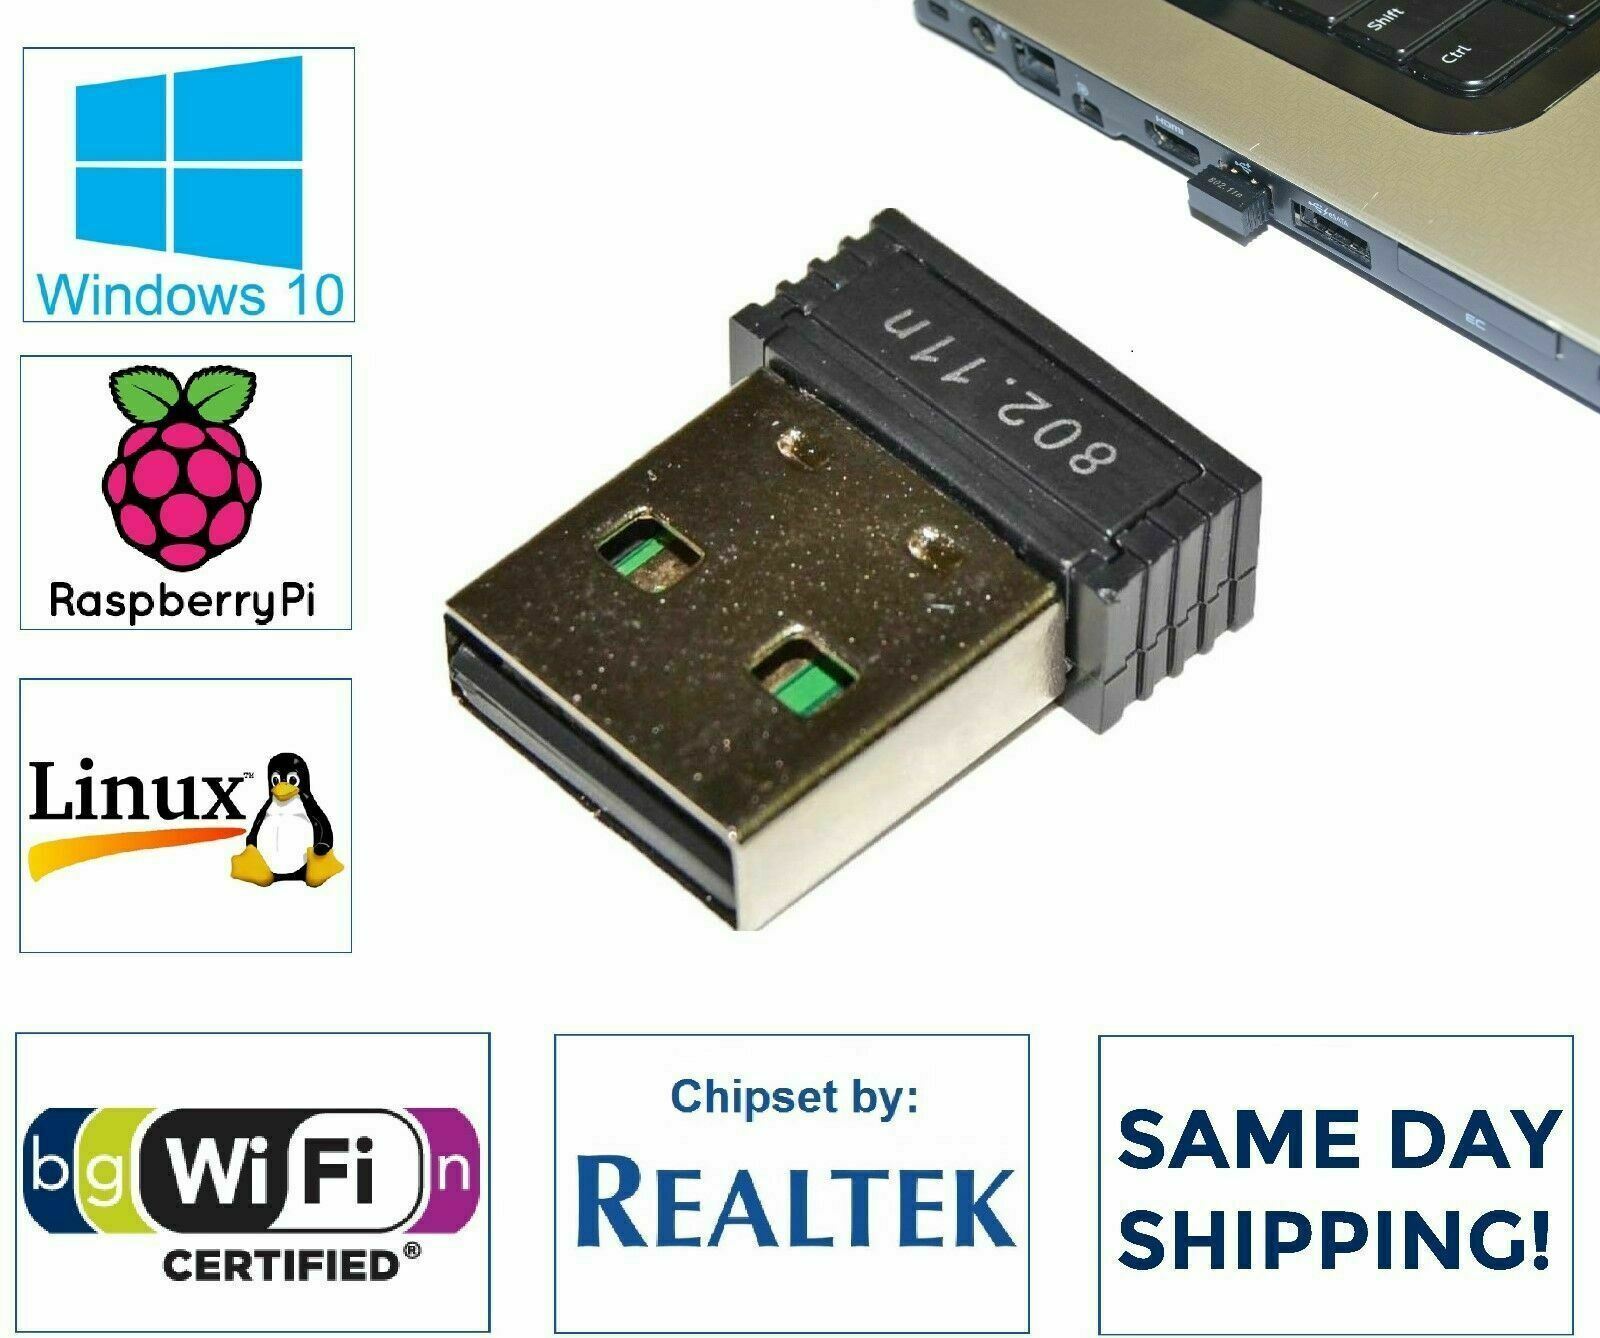 NEW Realtek RTL8188 USB WiFi 802.11B/G/N Adapter Mini Wireless Network Dongle